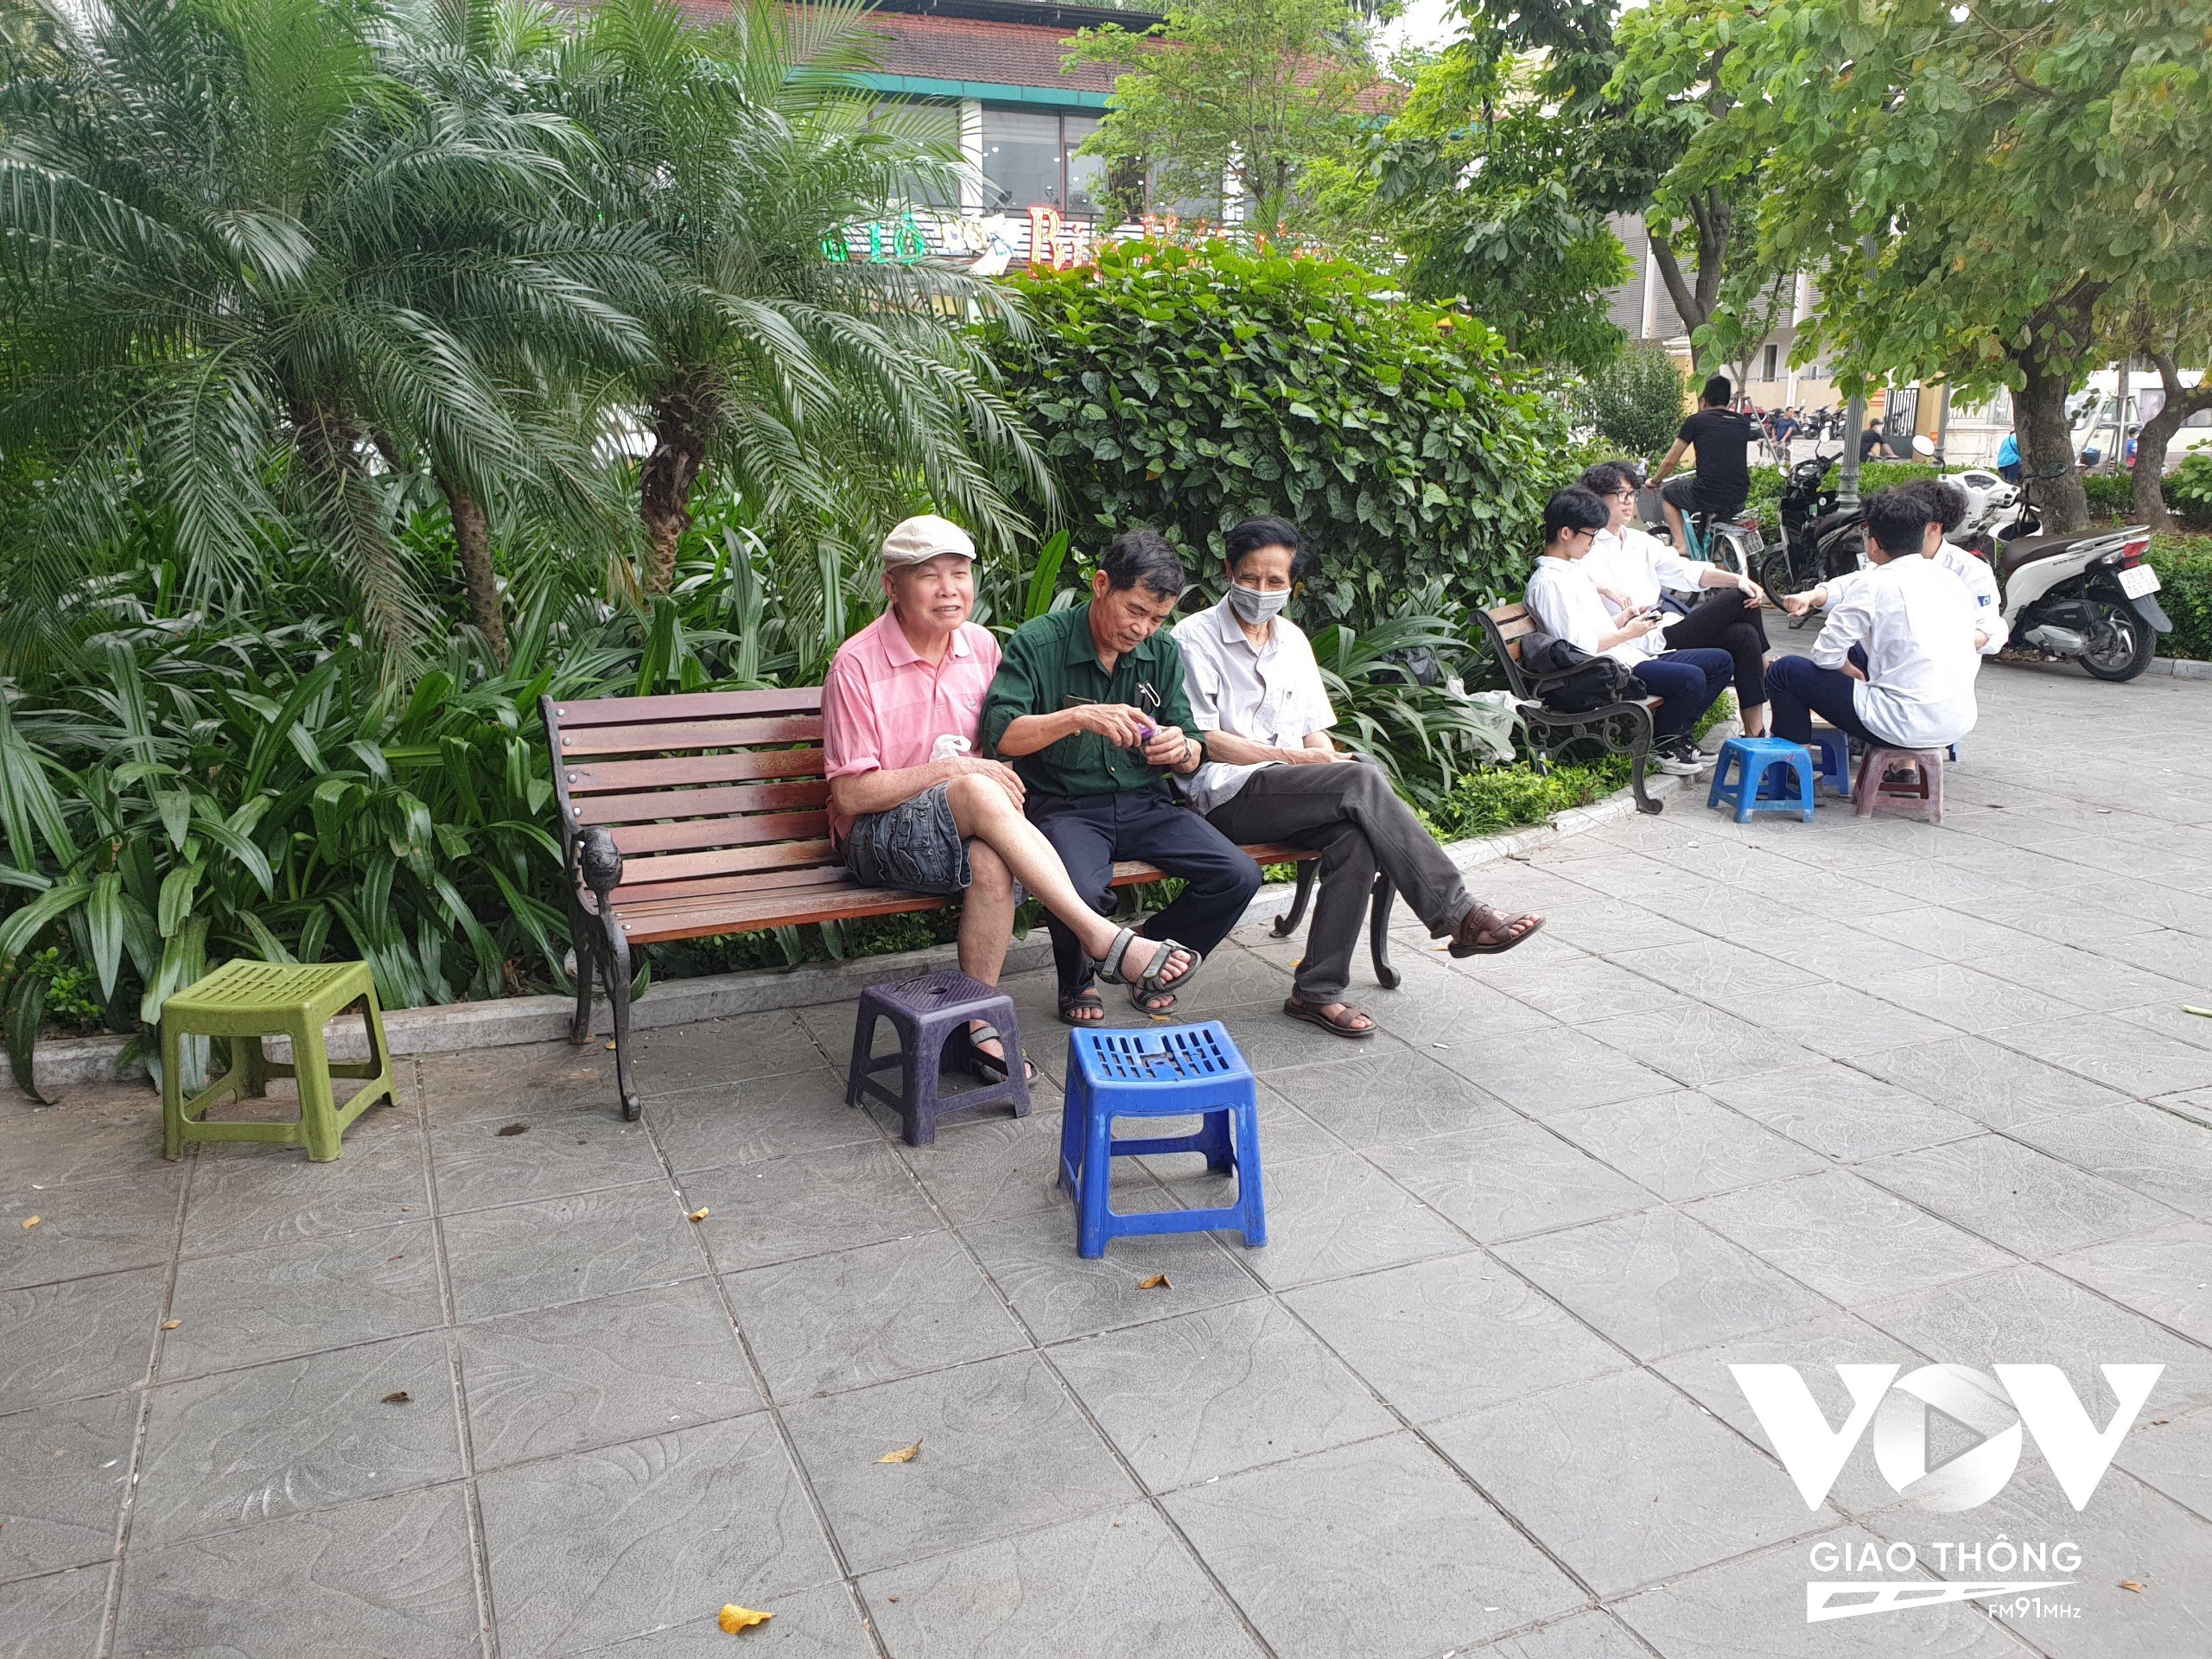 Đường Trích Sài (Tây Hồ, Hà Nội) bàn ghế bày la liệt trên vỉa hè sau khi lực lượng chức năng ra quân ngày 21/4